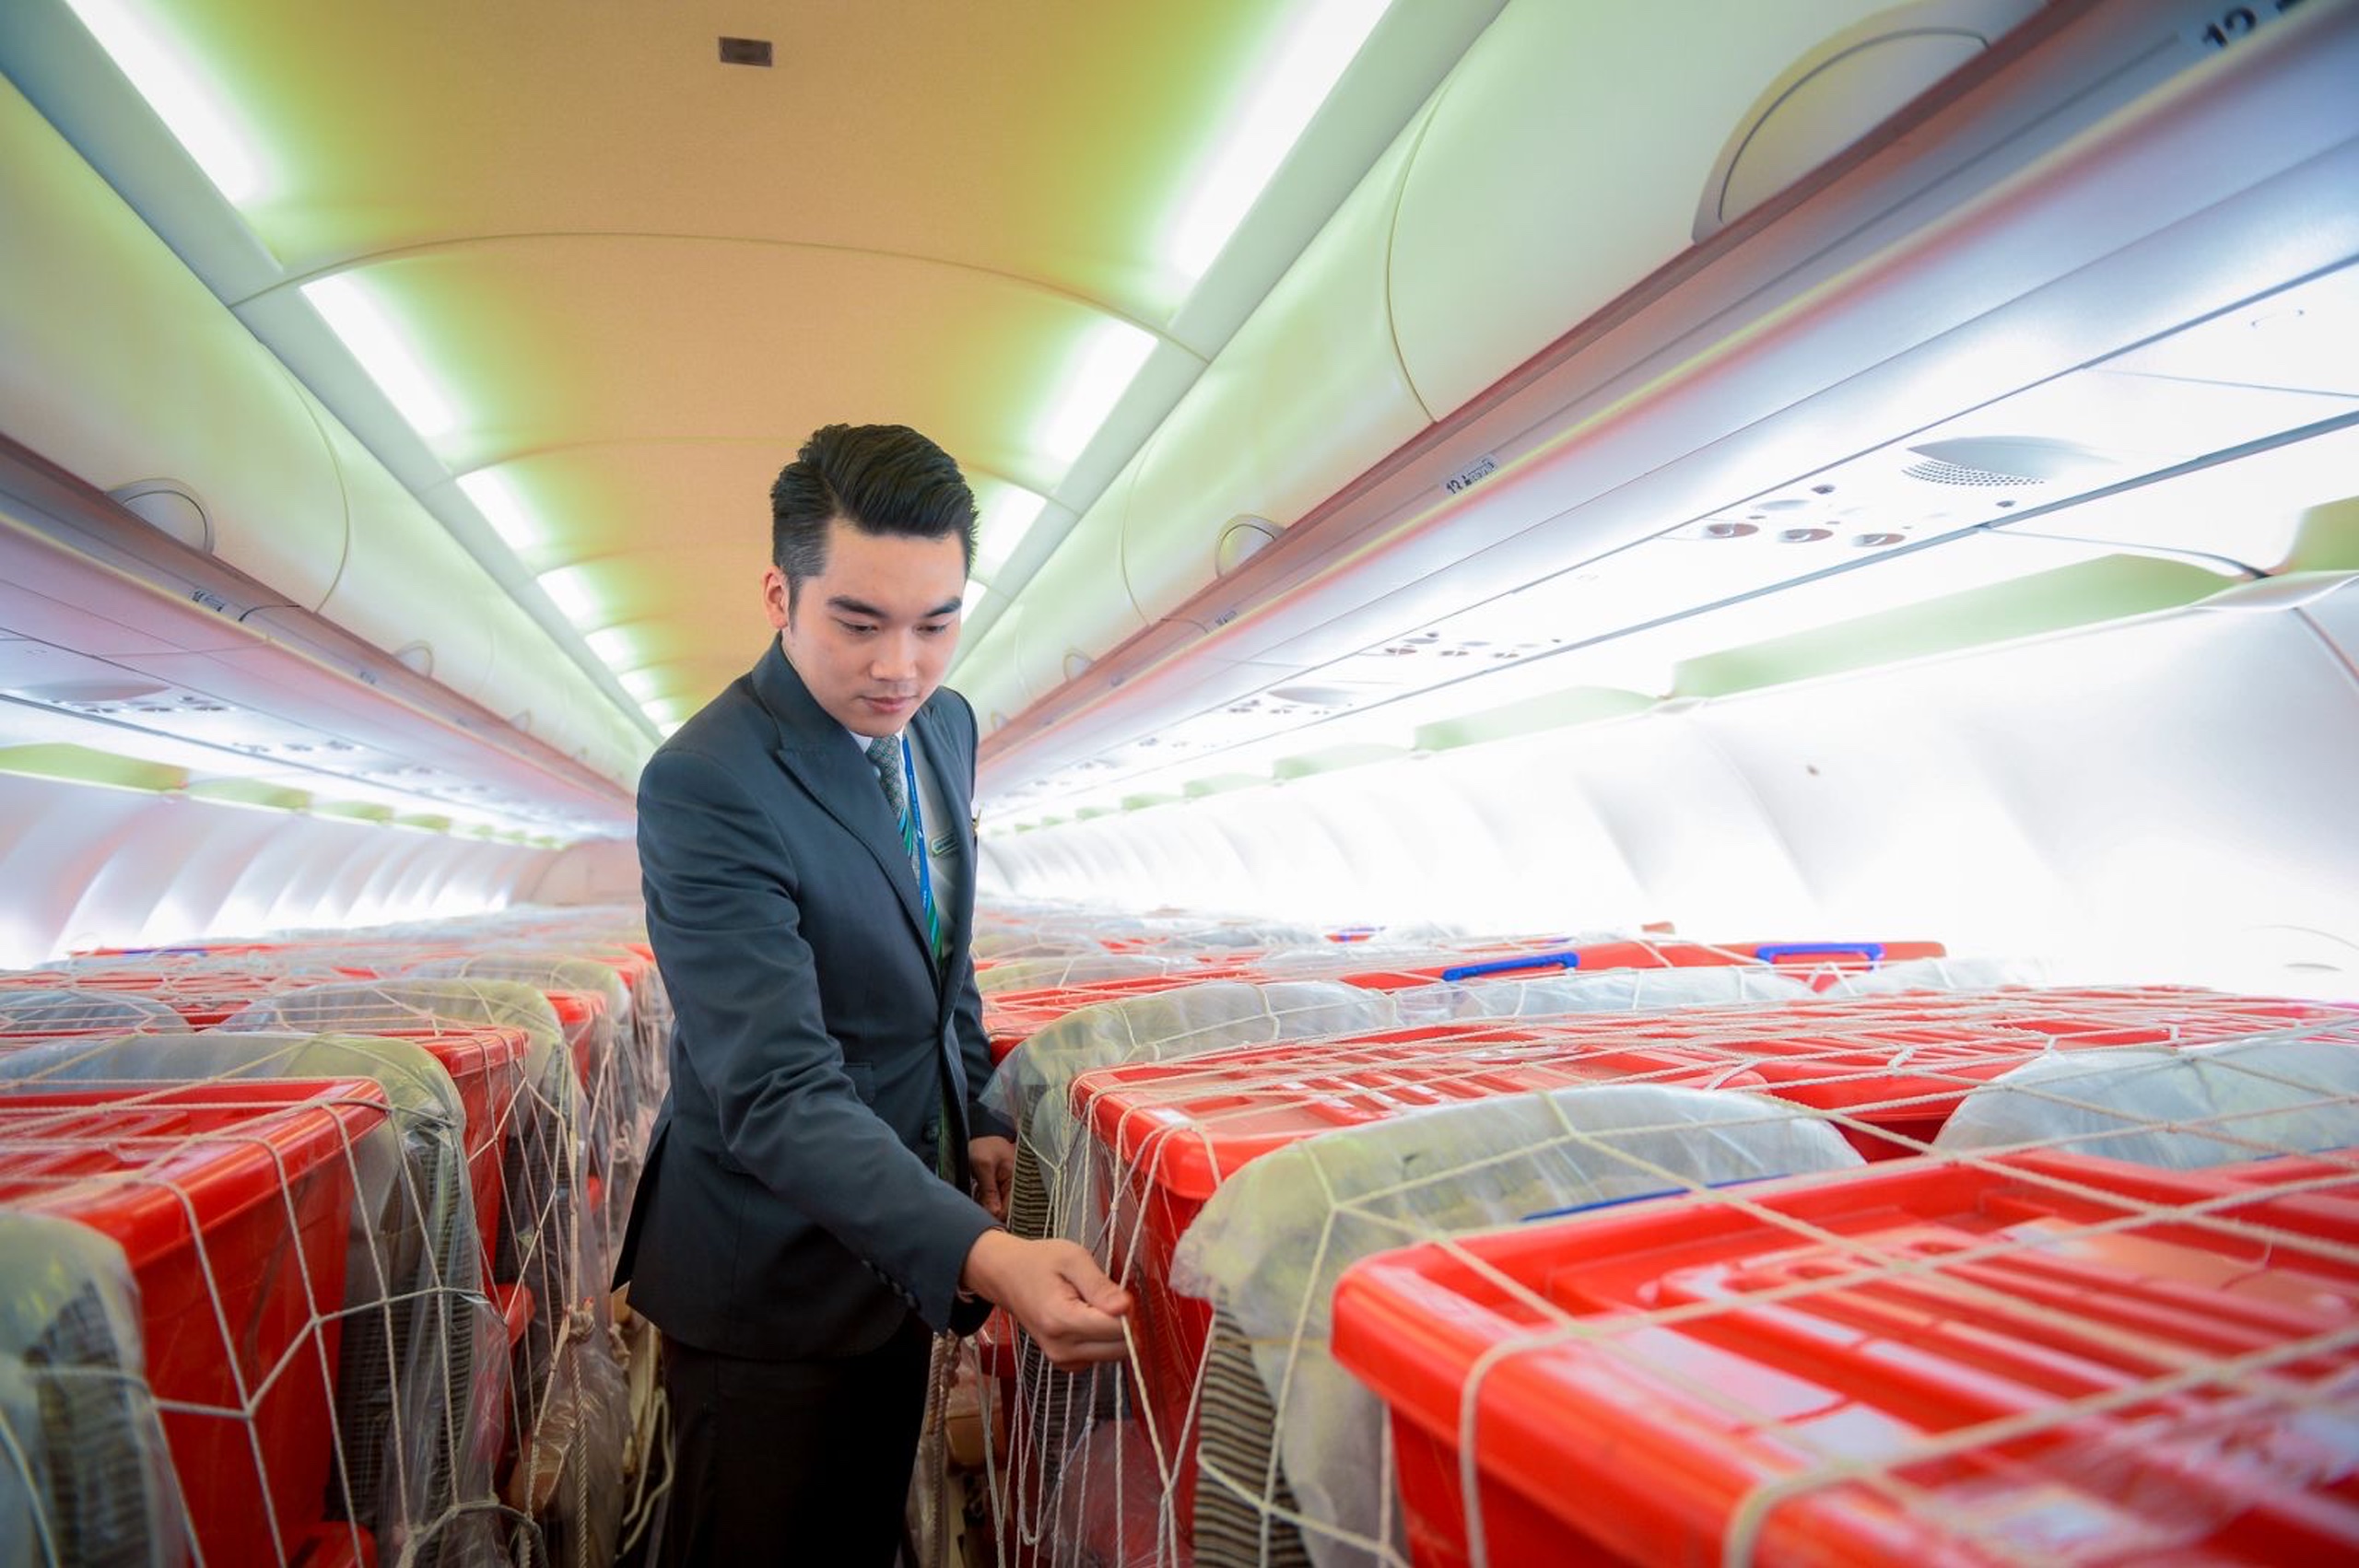 Hàng hóa được bảo quản cẩn thận trên khoang khách tàu Airbus A320 của Bamboo Airways nhằm đảm bảo chất lượng tốt nhất khi đến tay đồng bào vùng lũ